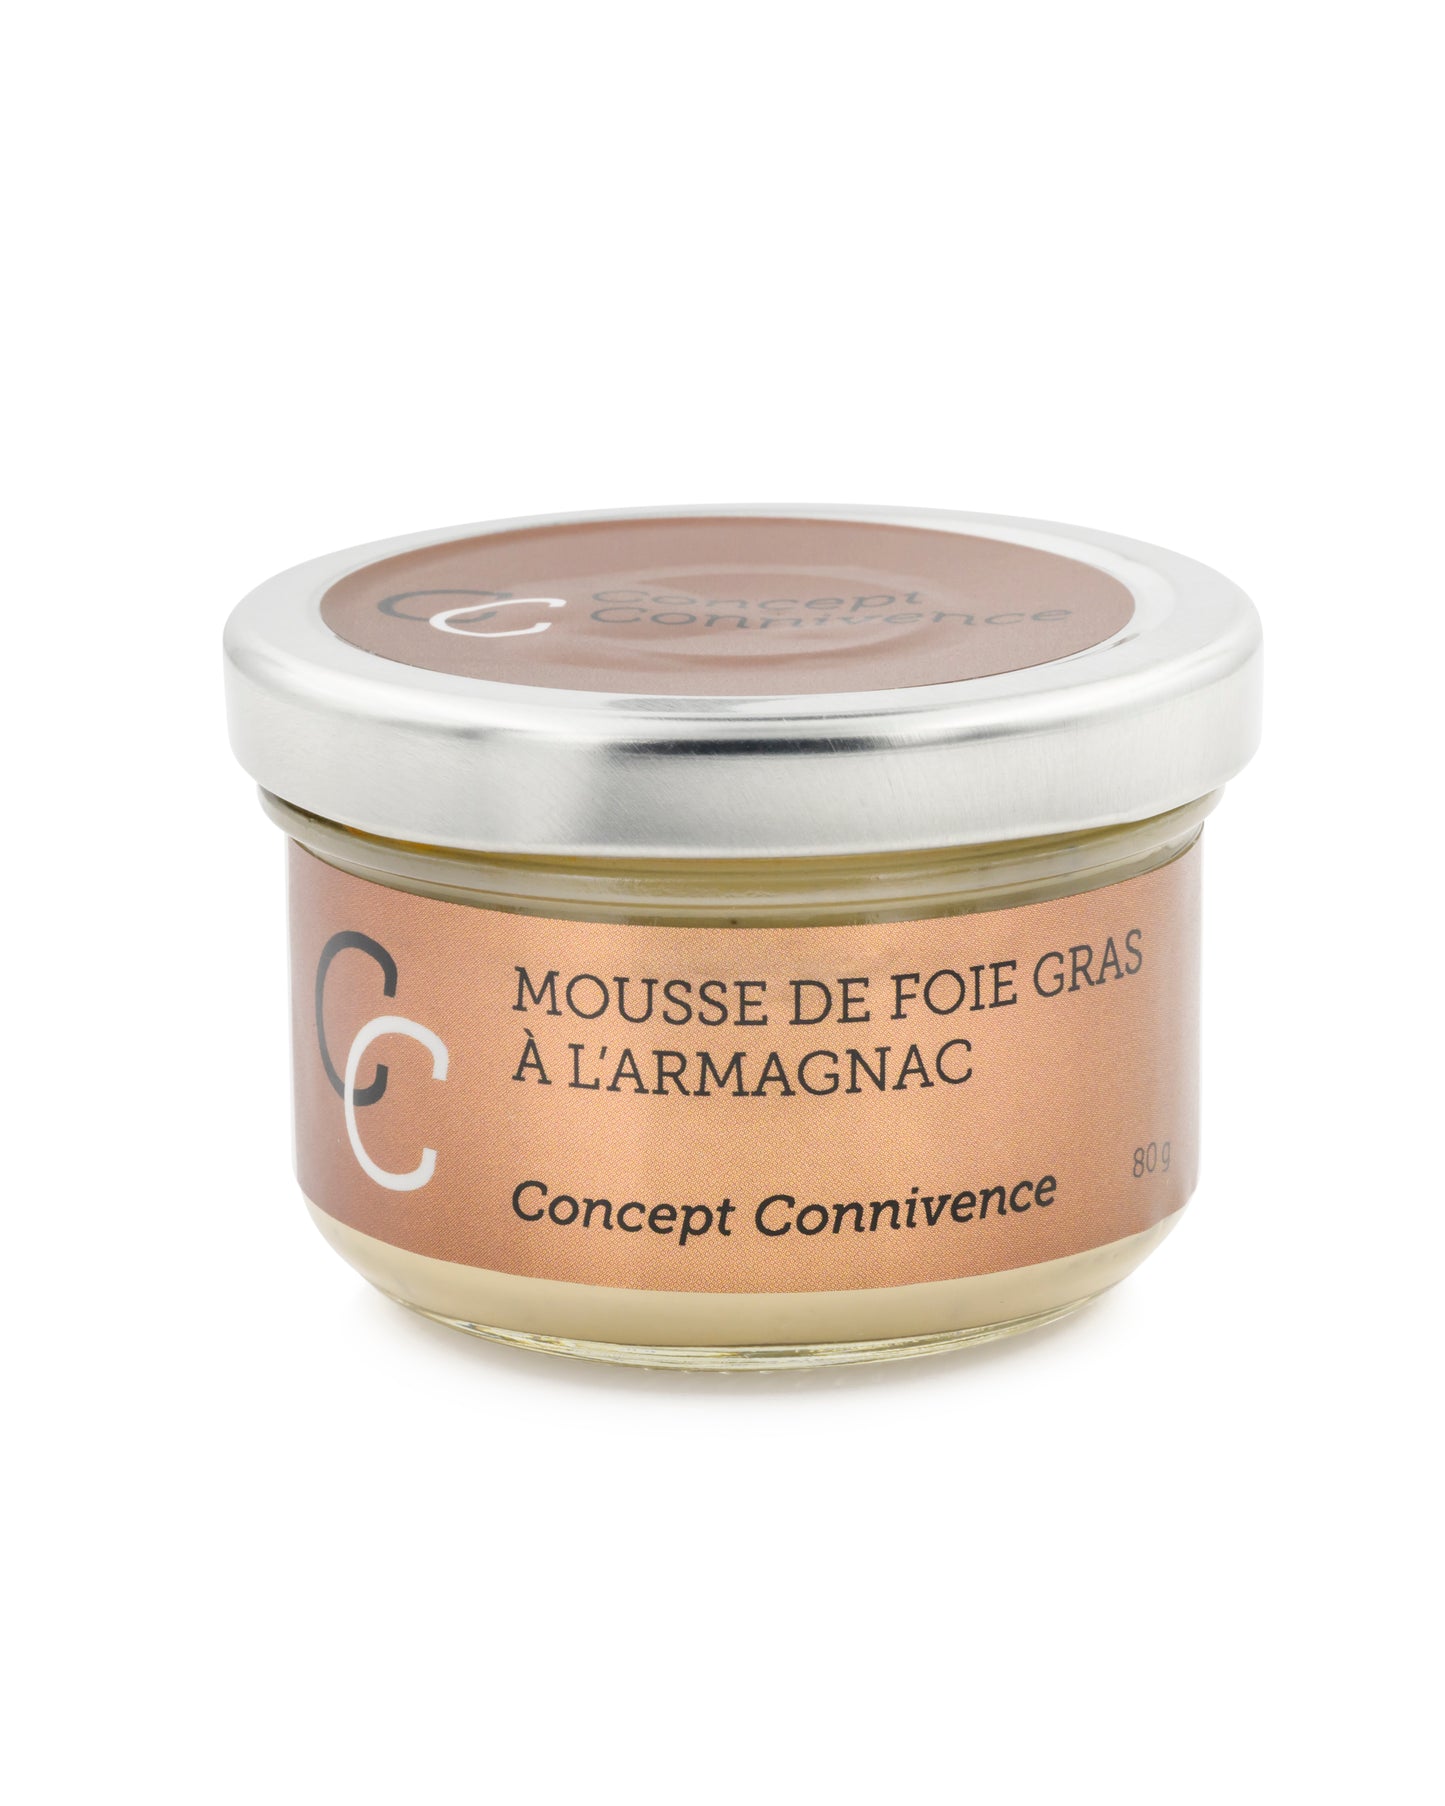 Mousse de foie gras à l'Armagnac